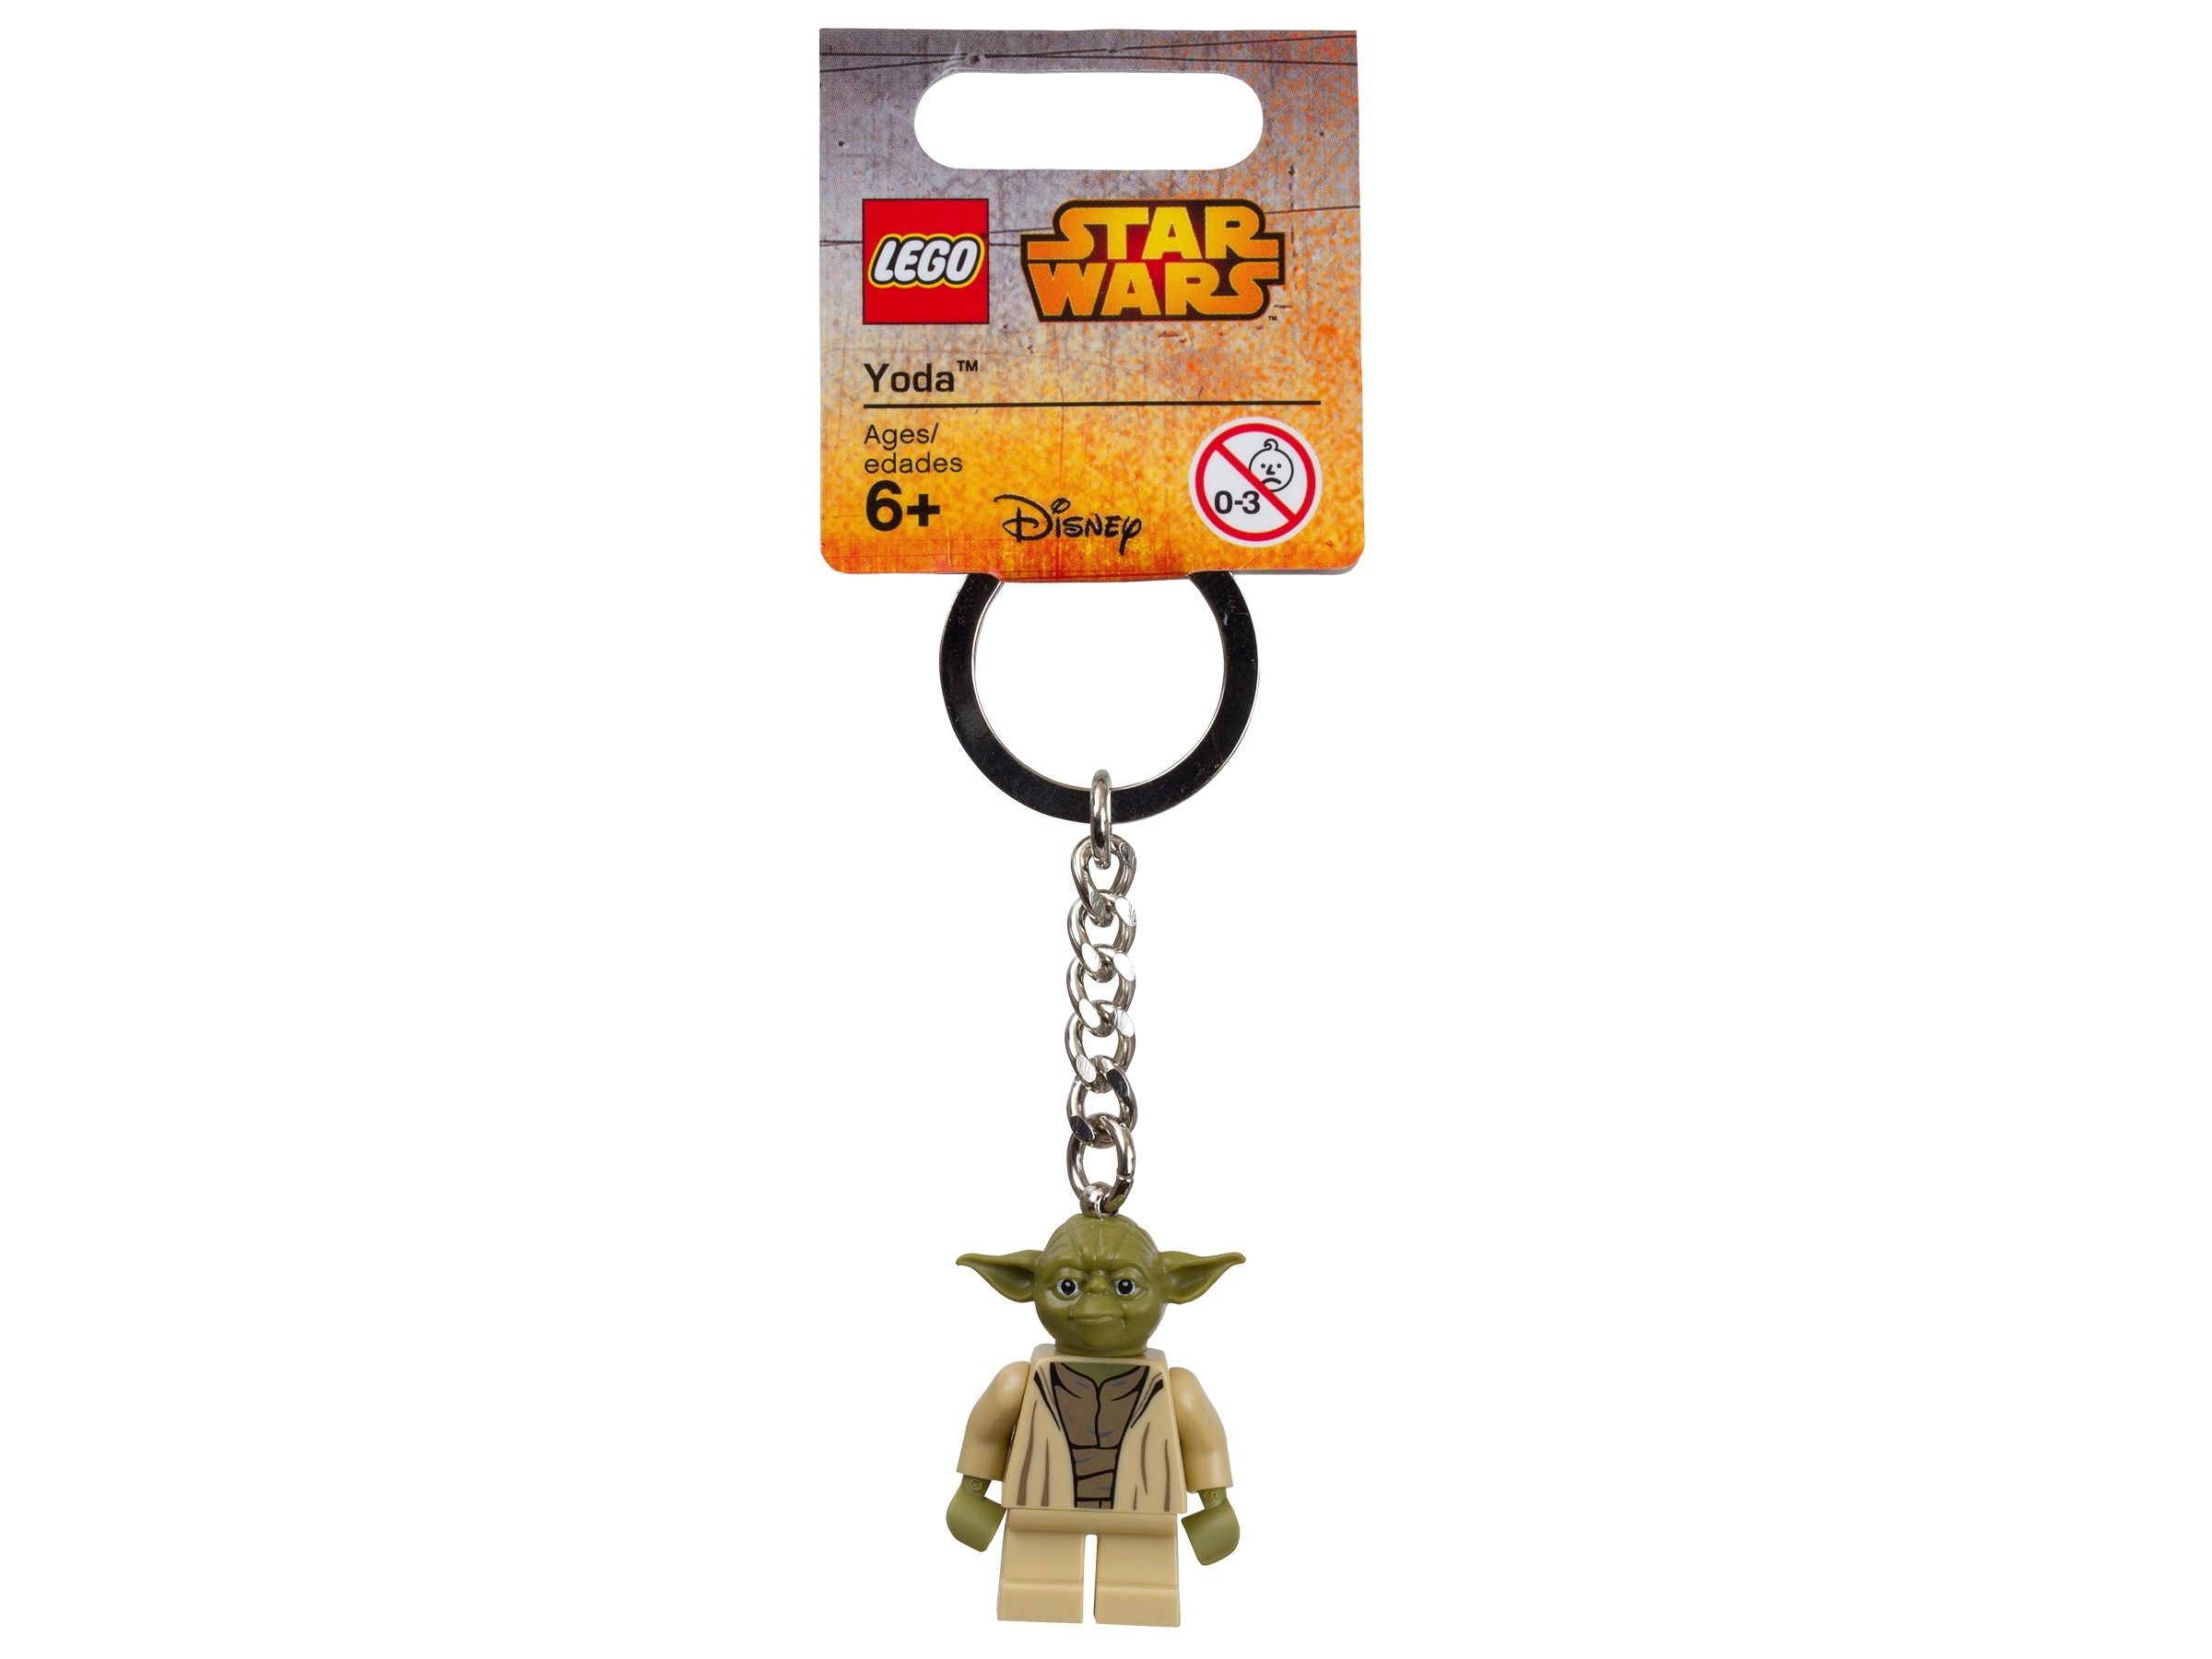 Authentic Disney Parks LEGO Star Wars Yoda Keychain 853449 